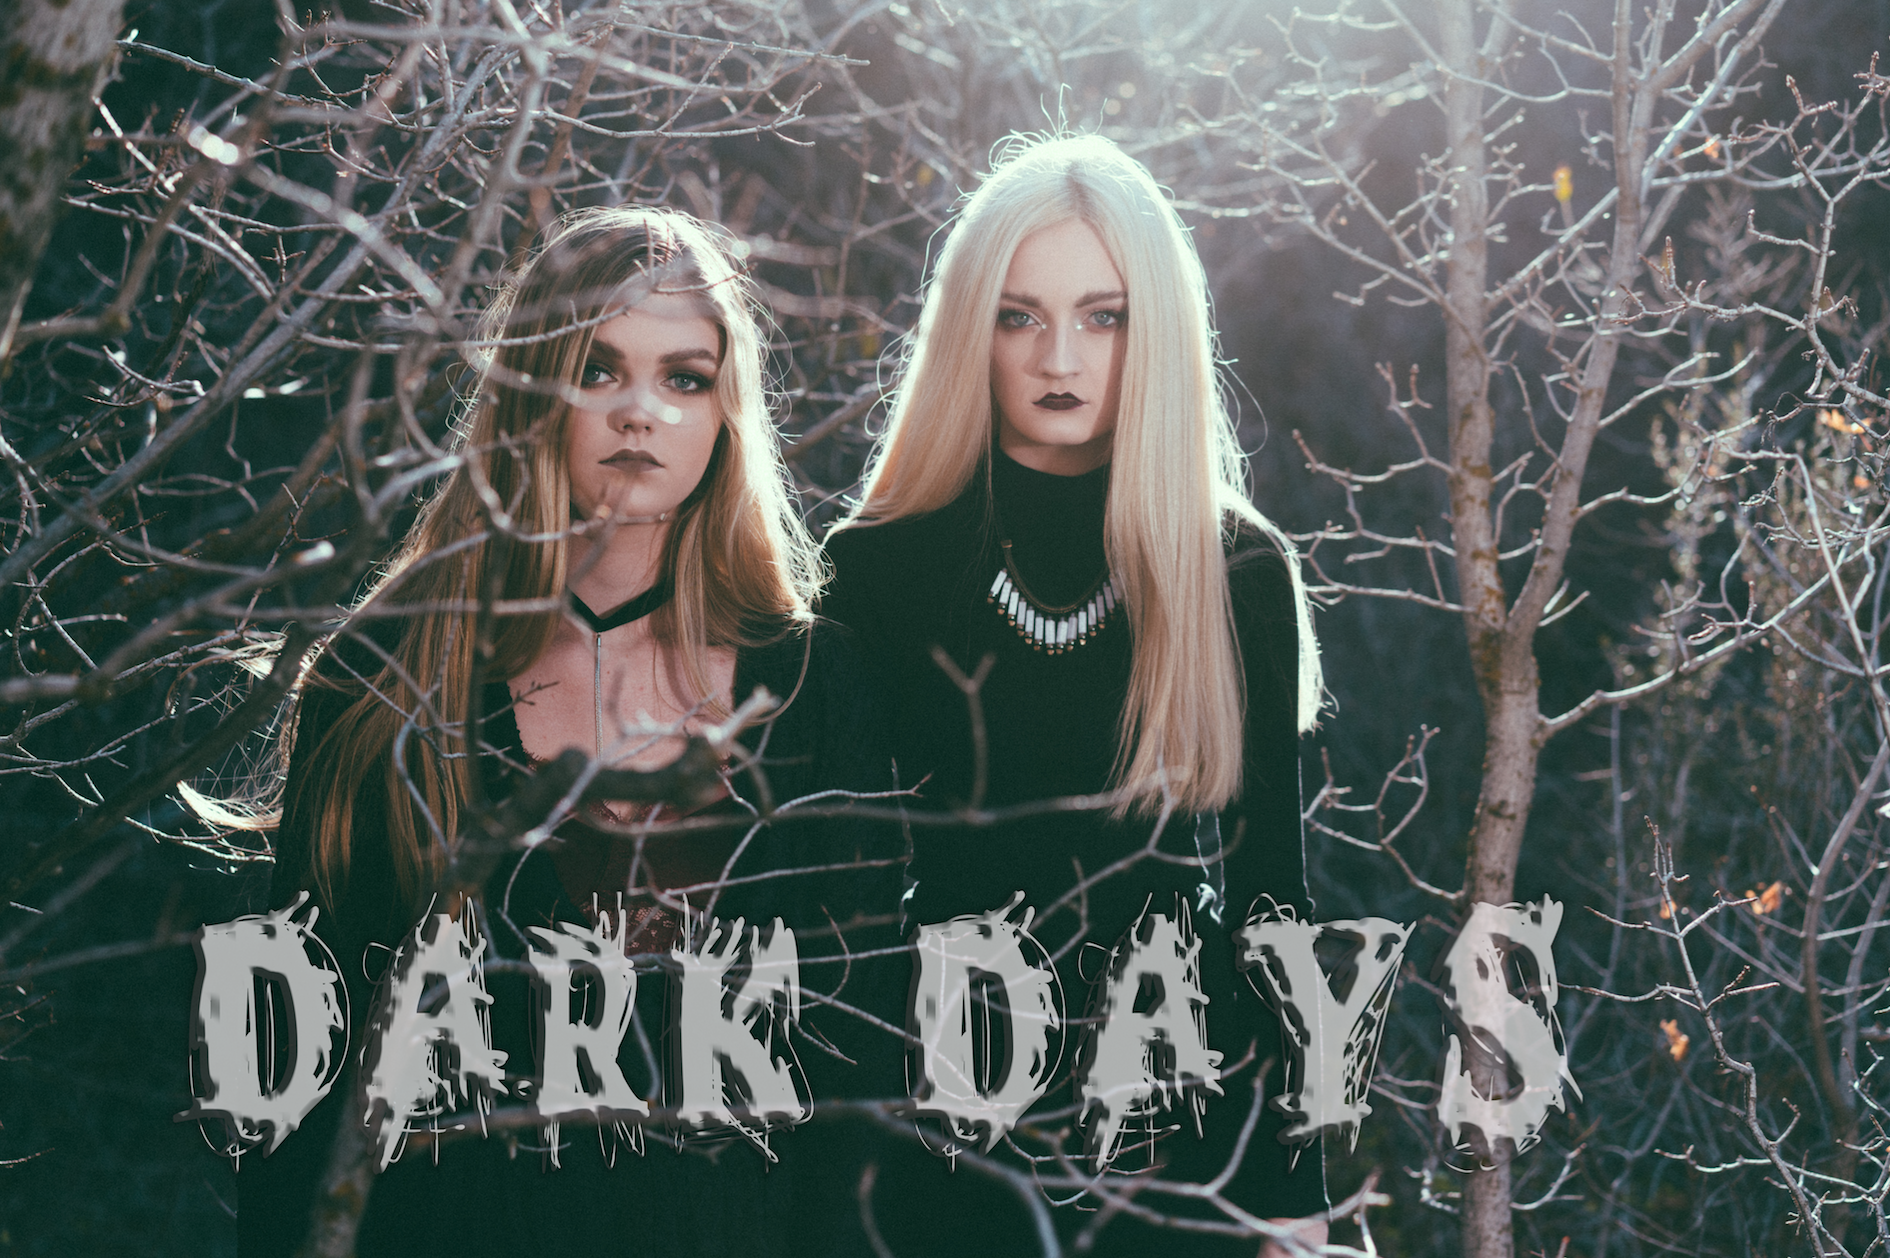 Dark Days